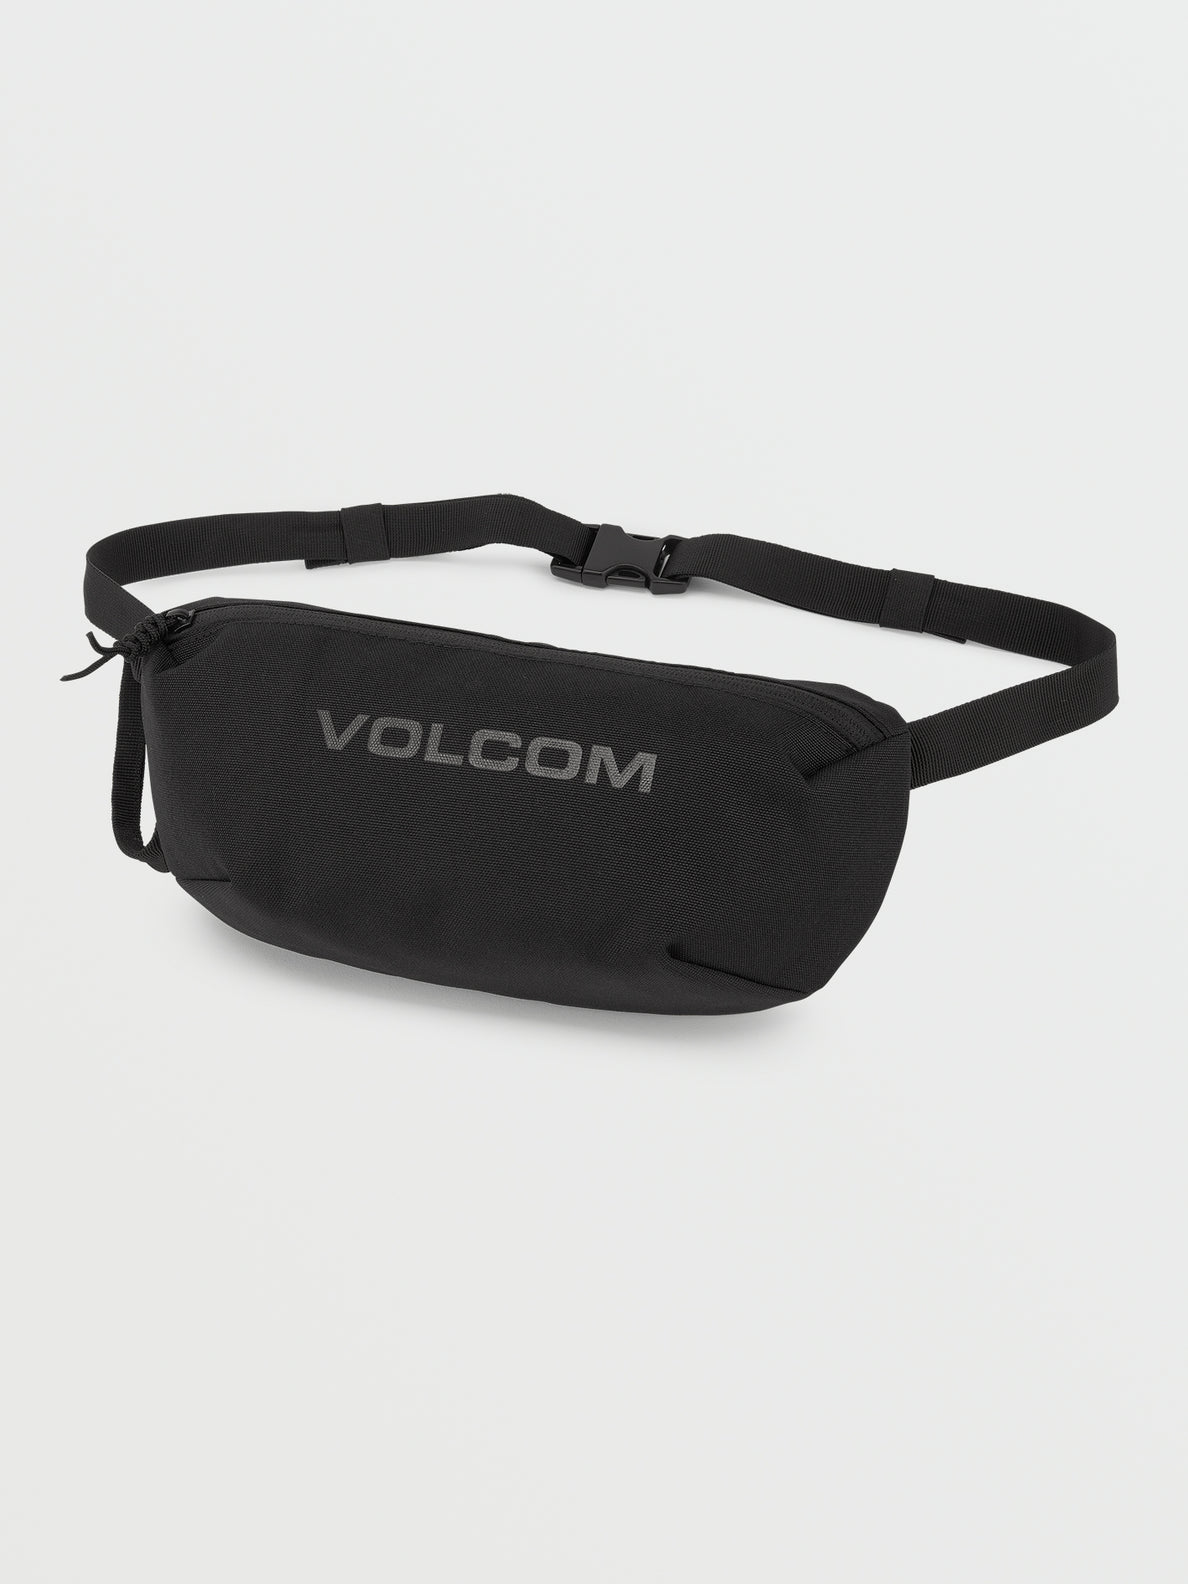 Volcom Mini Waist Pack - Black on Black